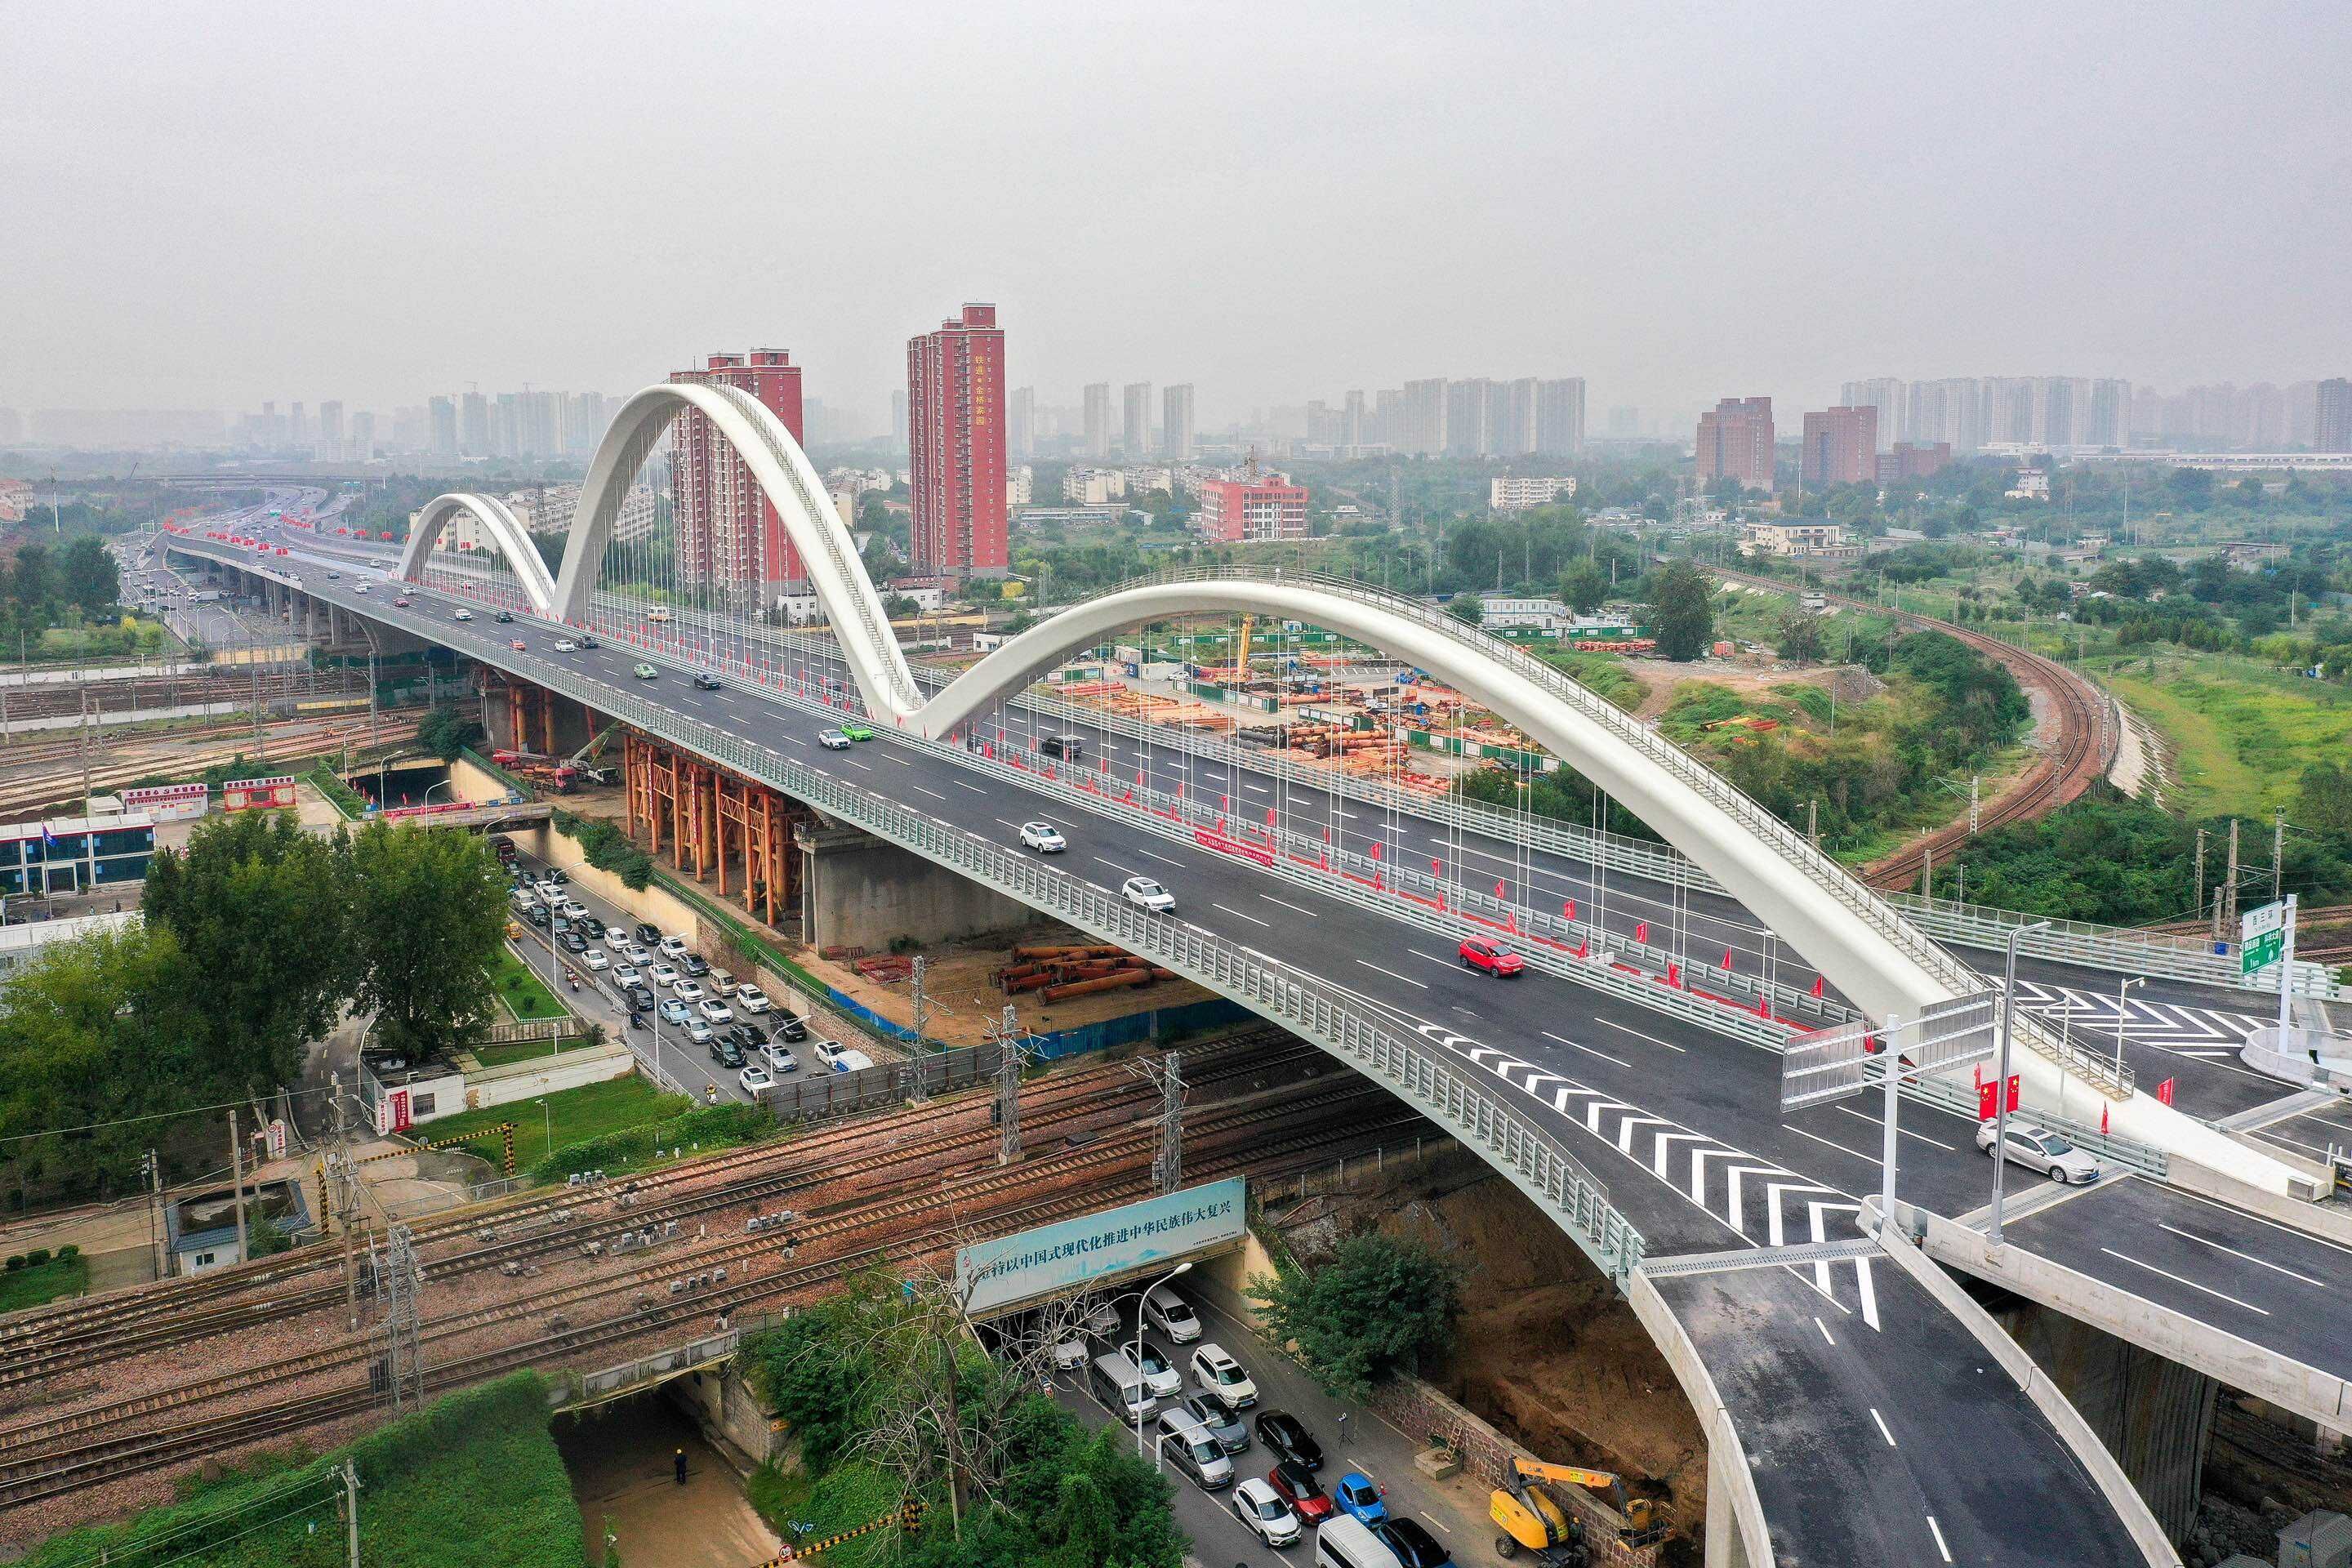 郑州彩虹桥建成通车 横跨亚洲最大铁路编组站